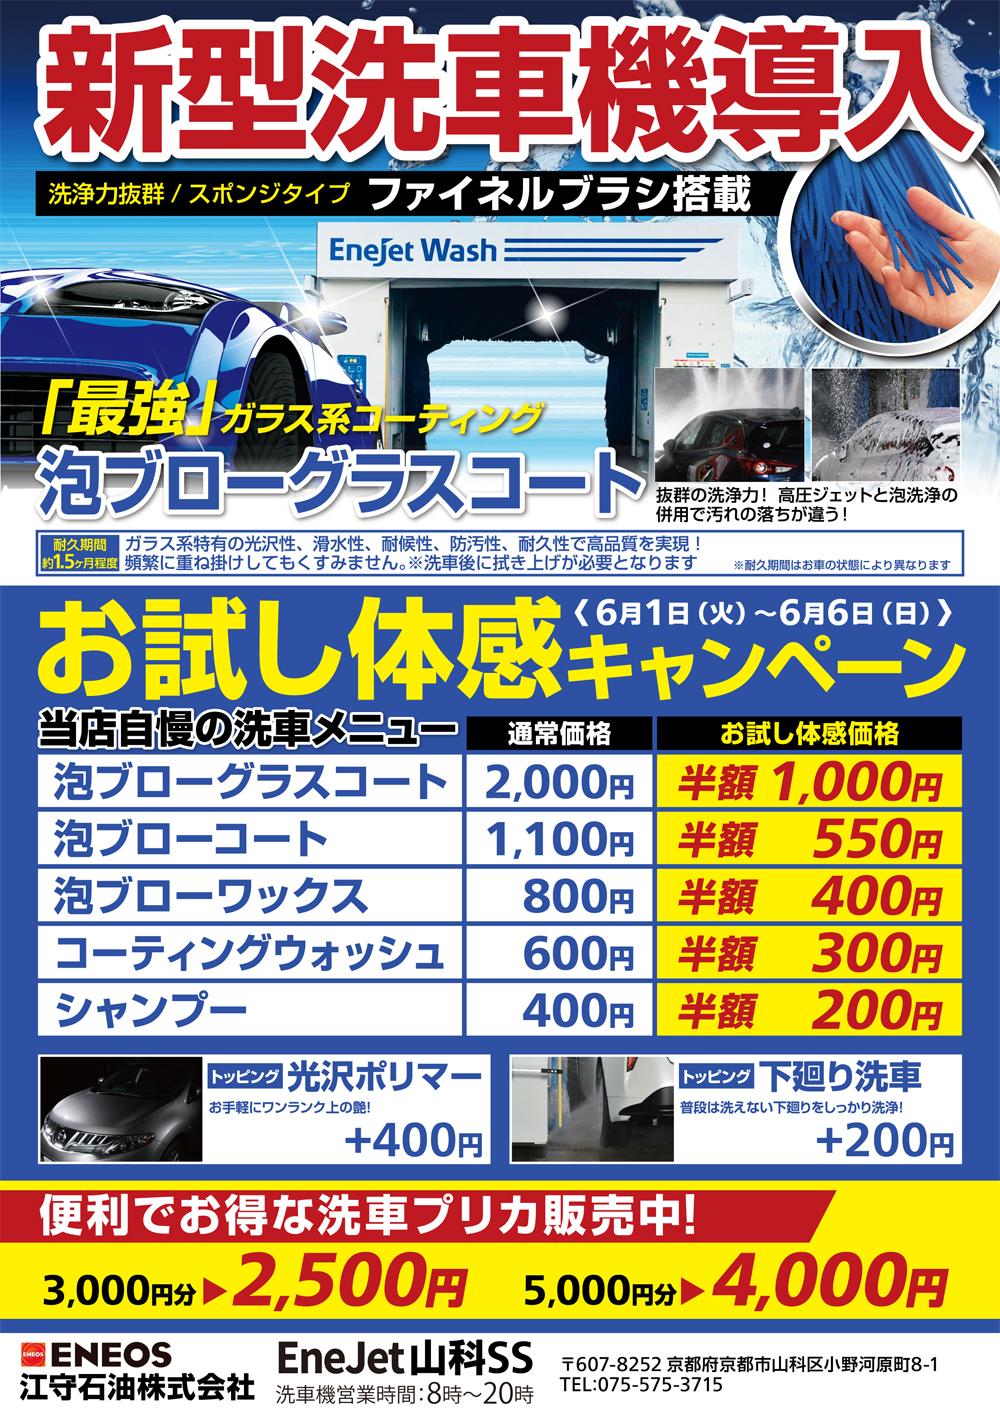 Enejet山科 新型洗車機導入キャンペーン開催 カーライフサポート 江守石油株式会社